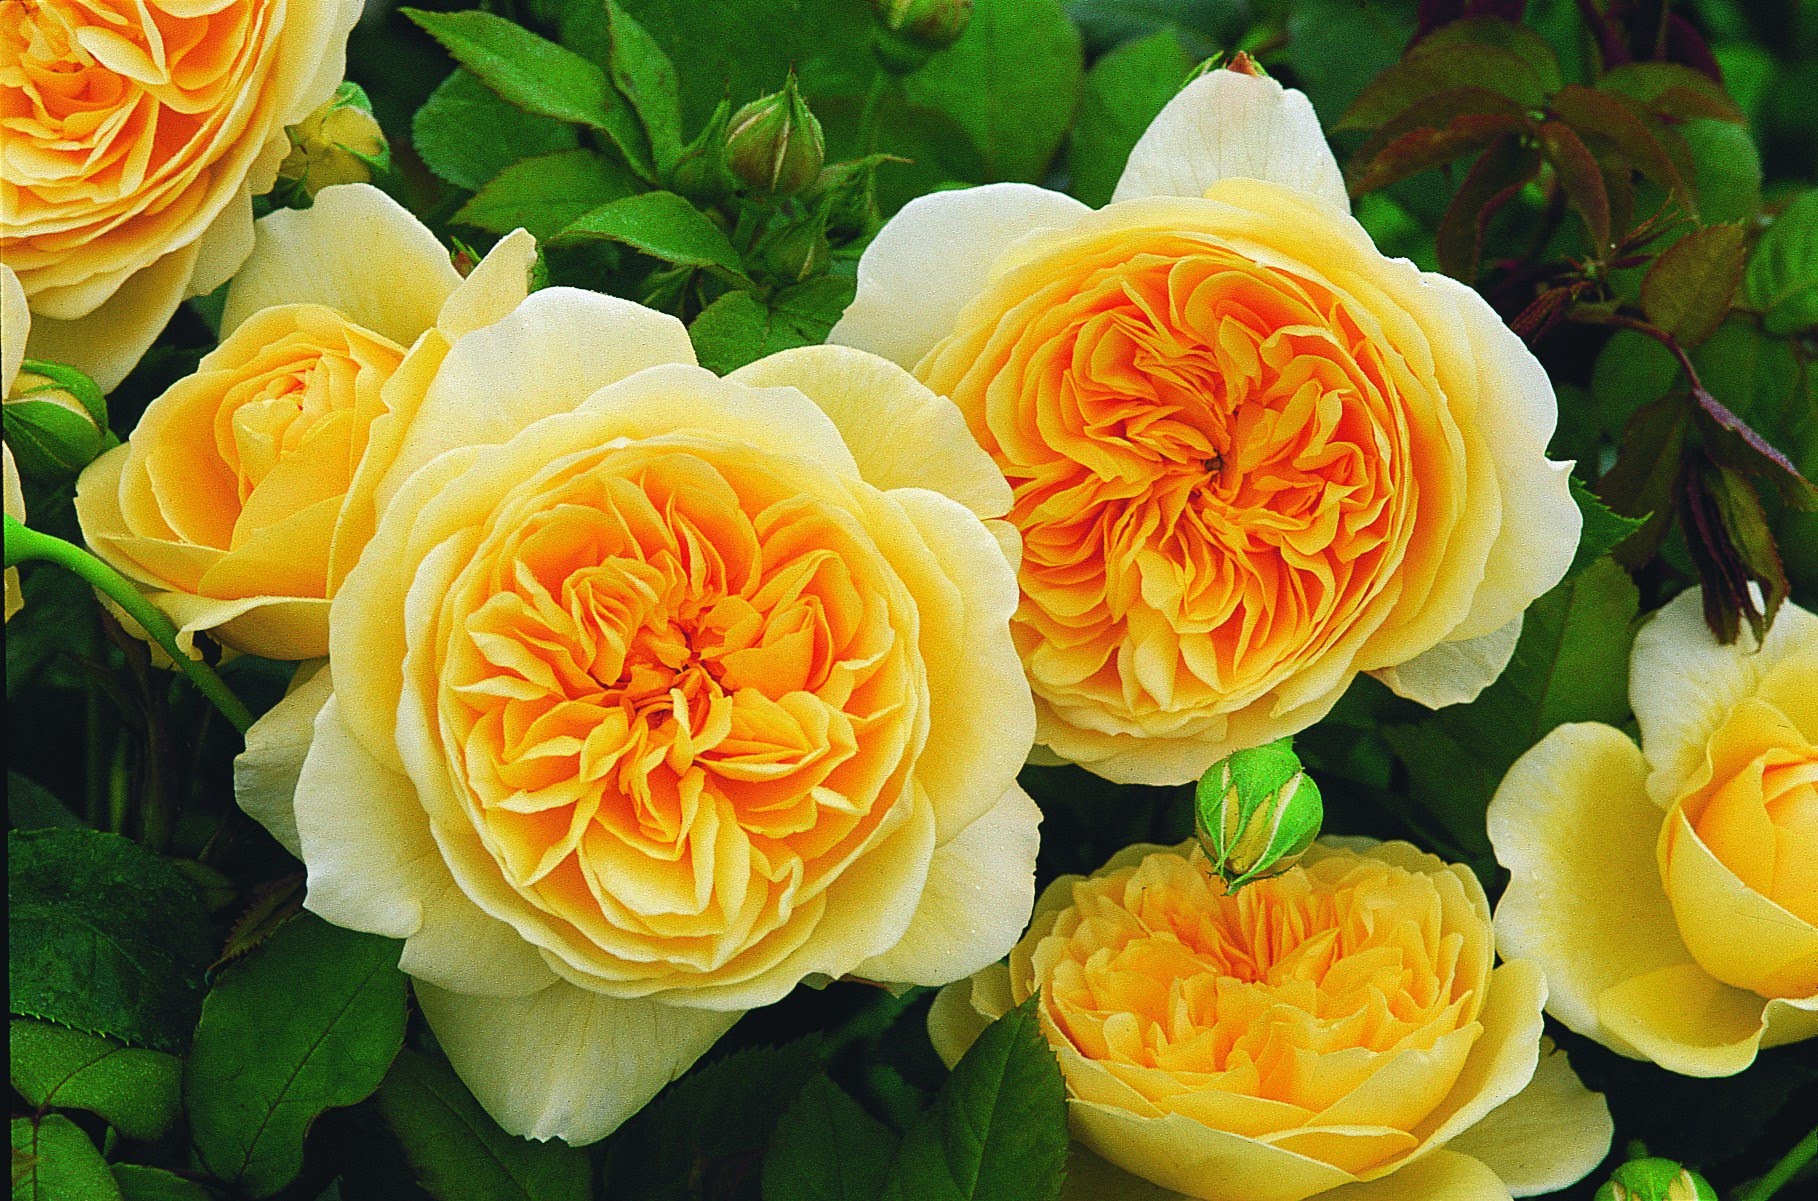 Плетистые розы в Сибири, посадка и уход. Выращивание плетистых роз в Сибири. Сорта плетистых роз для Сибири, фото. Как вырастить плетистые розы в Сибири: посадка, уход.